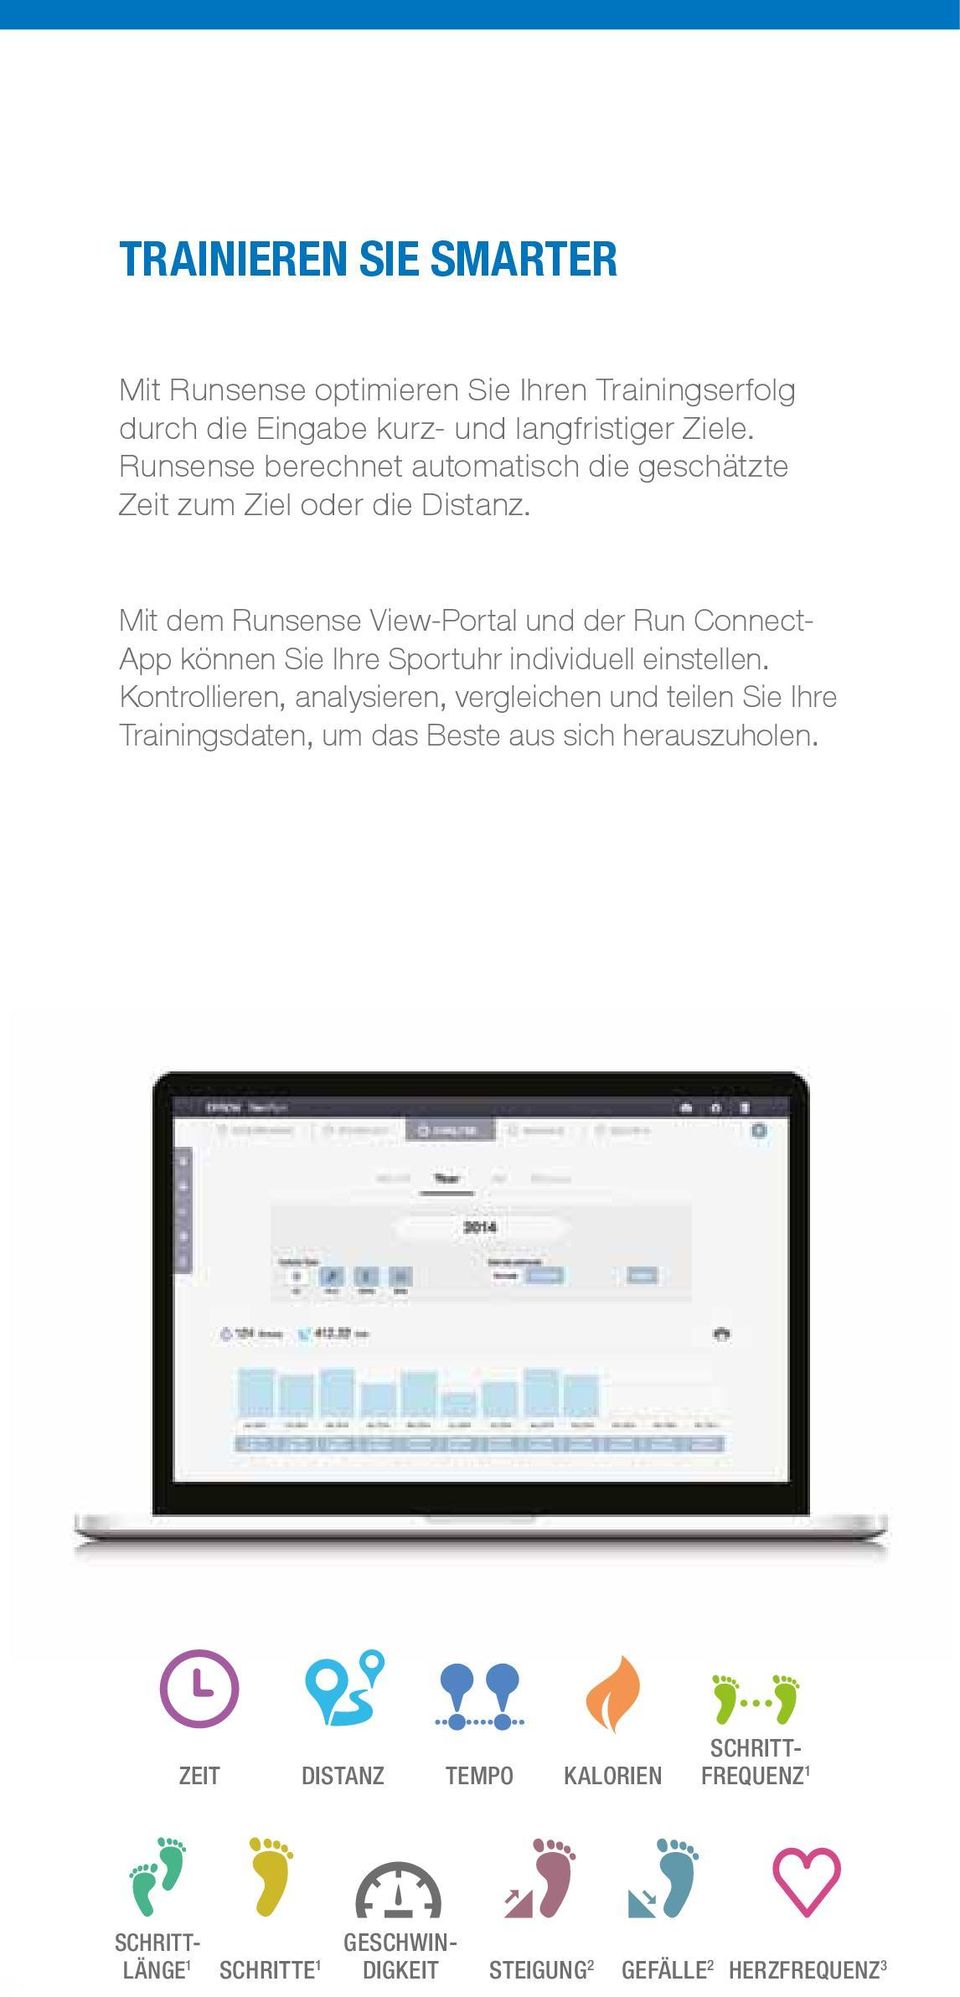 Mit dem Runsense View-Portal und der Run Connect- App können Sie Ihre Sportuhr individuell einstellen.